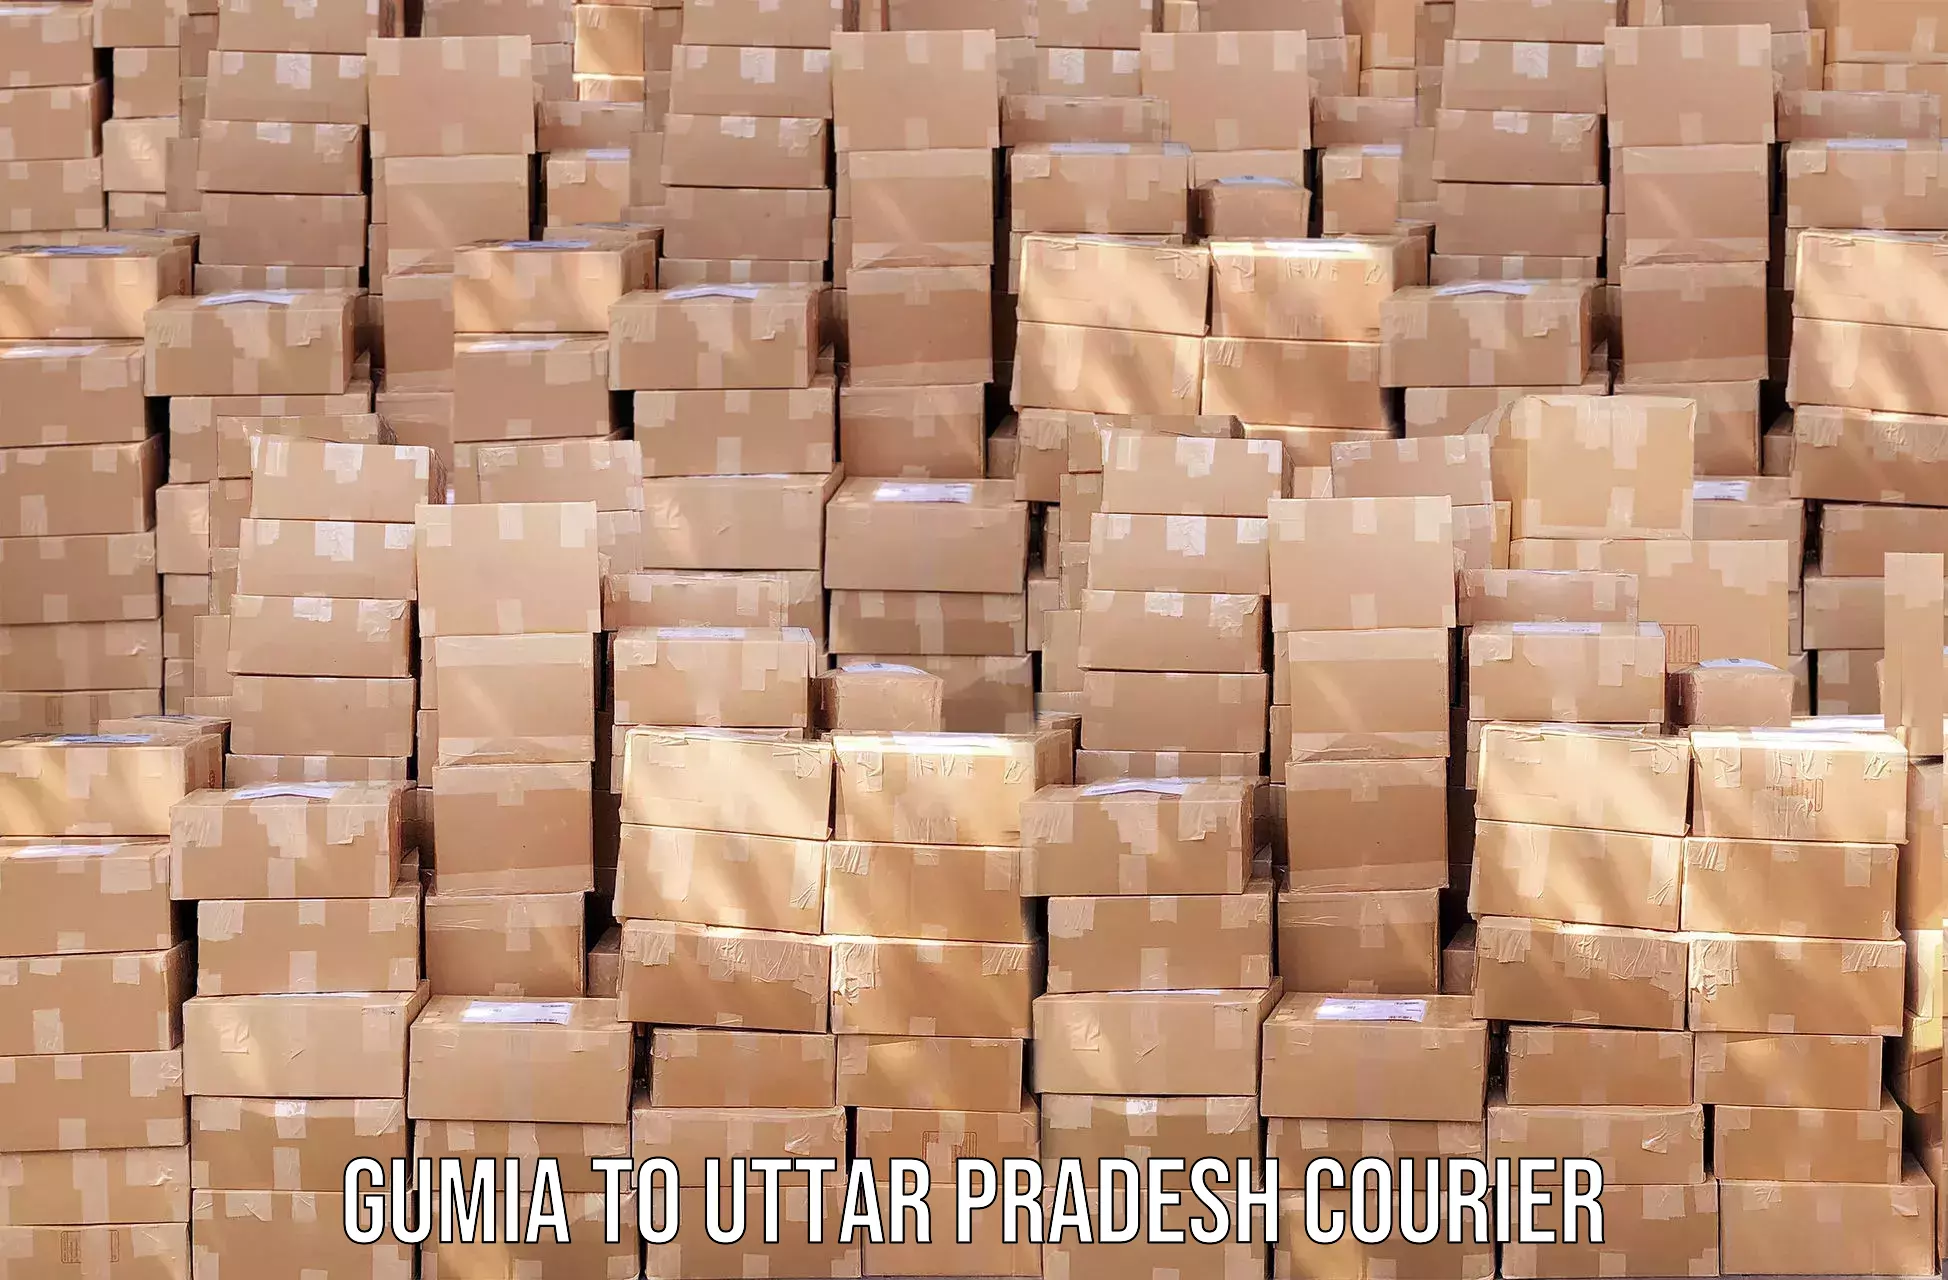 Next-day freight services Gumia to Shiv Nadar University Dadri